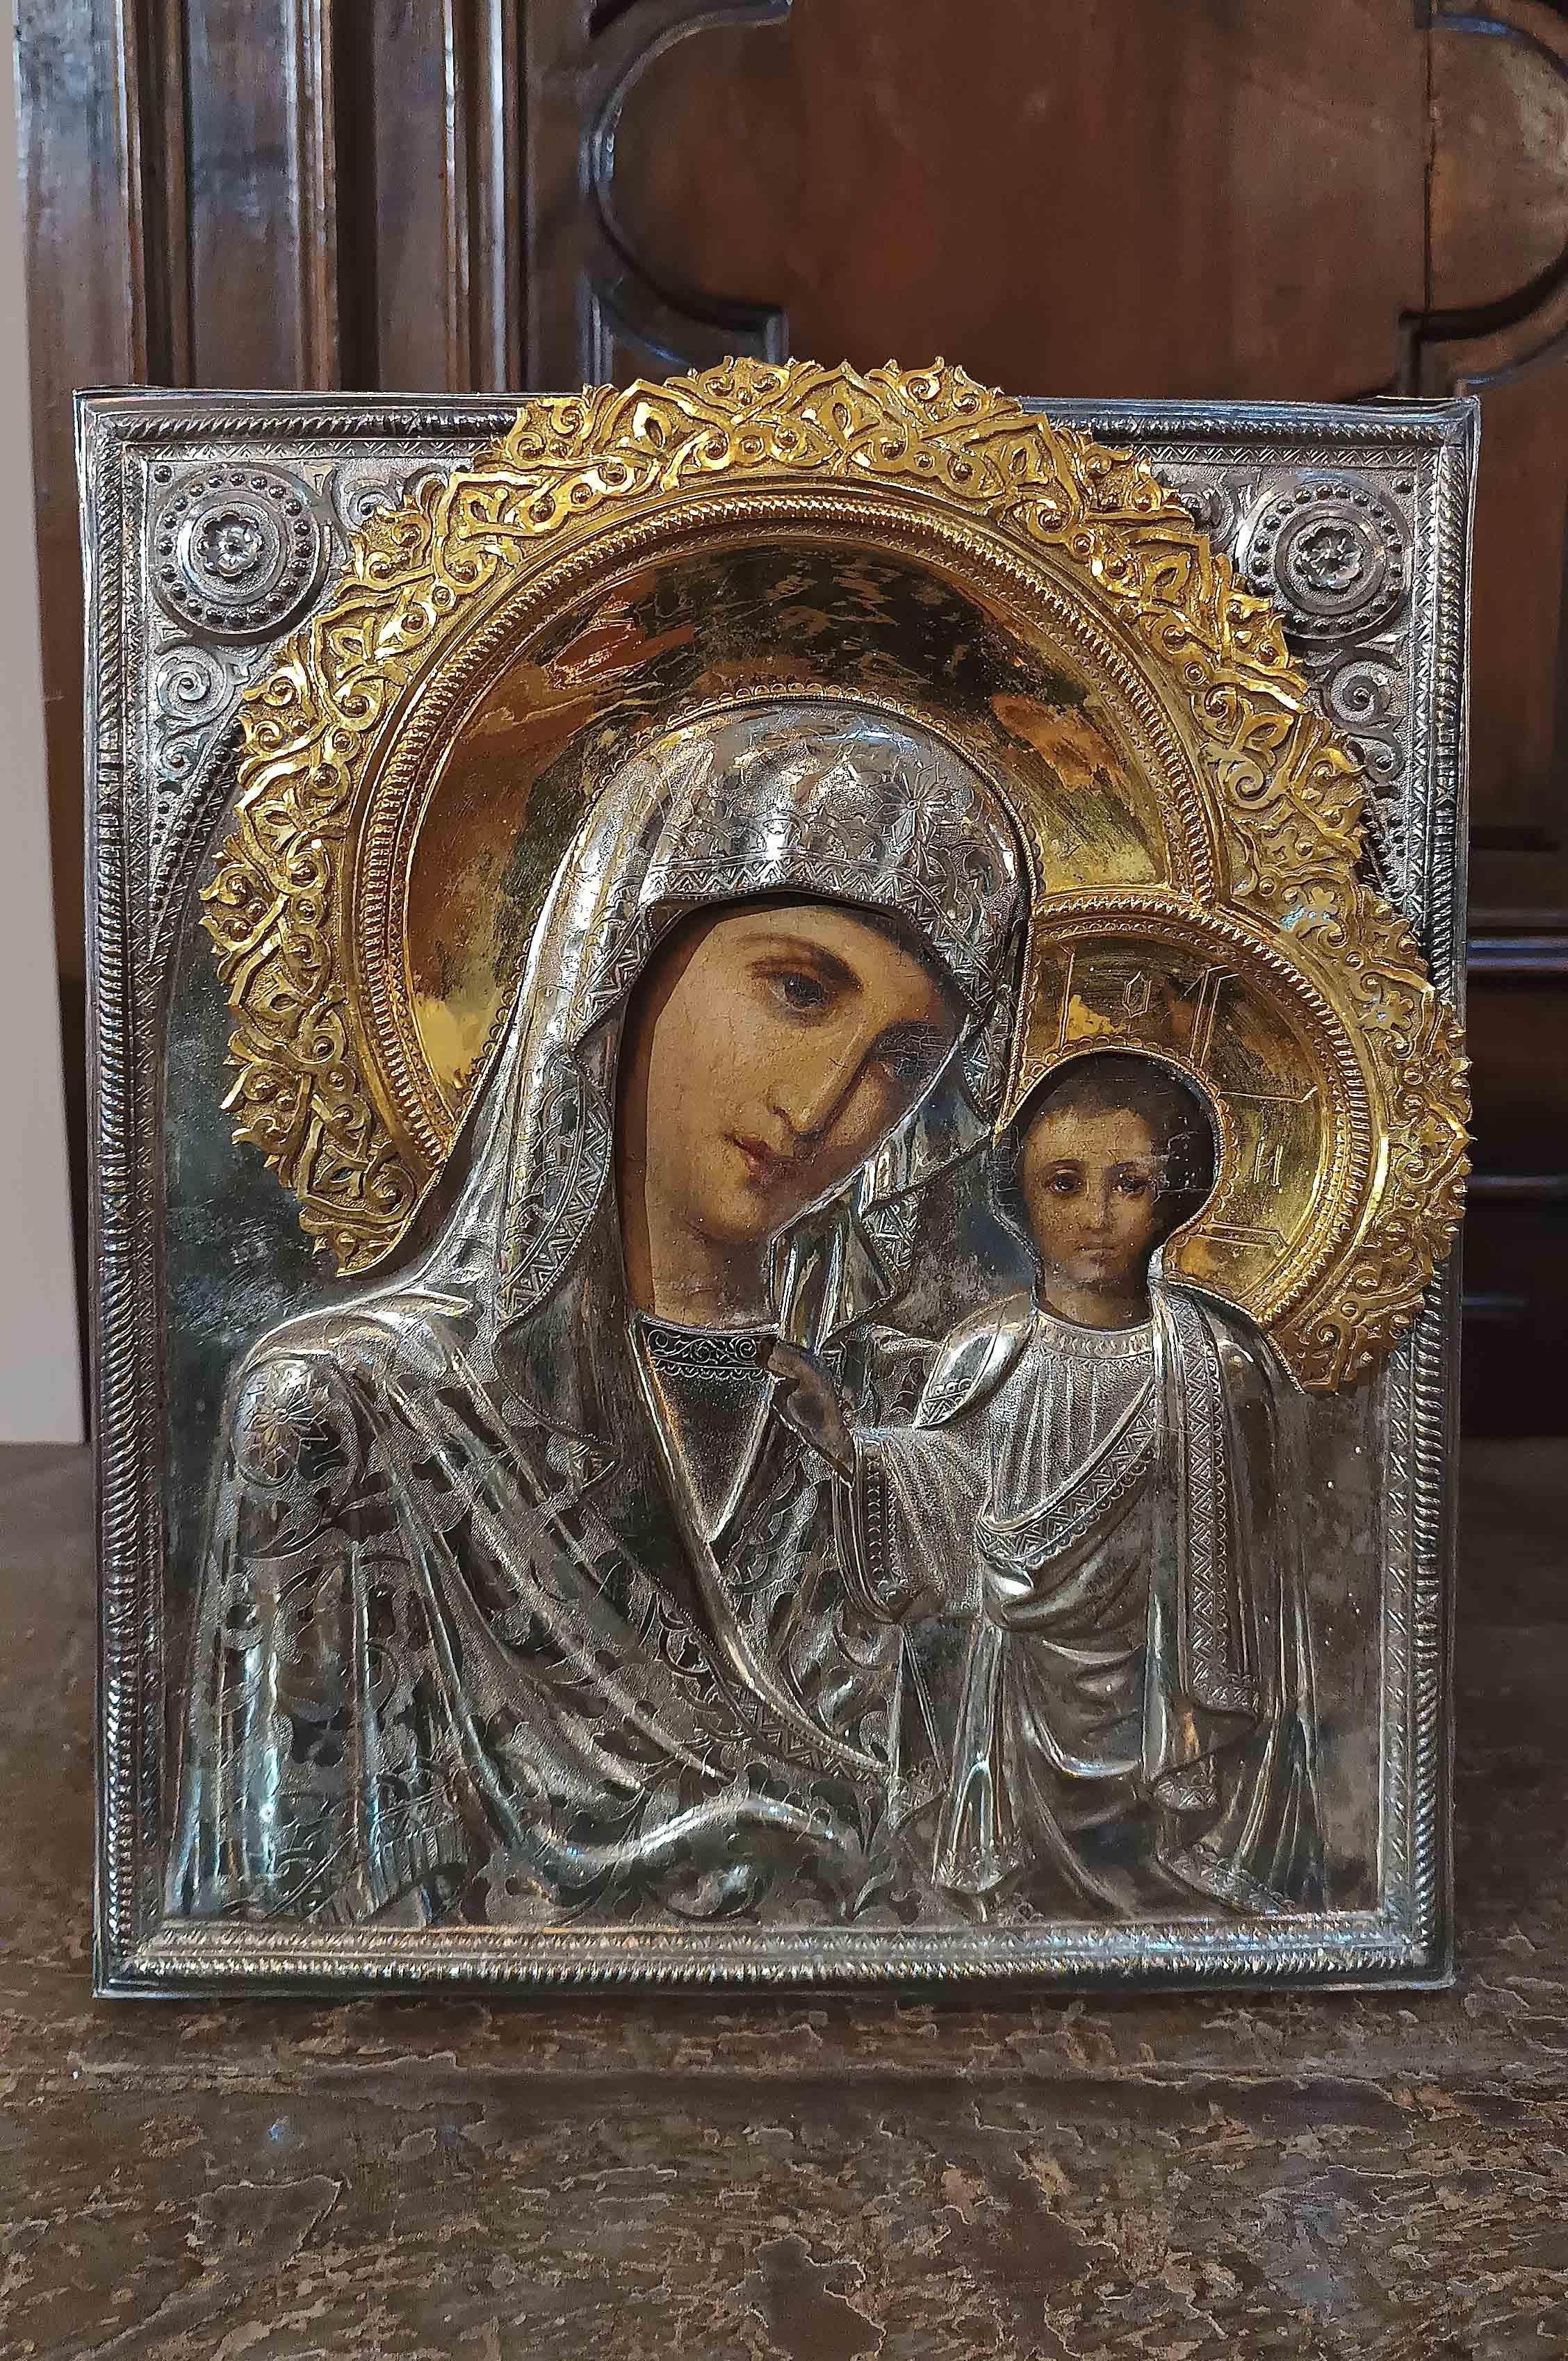 Belle icône peinte à l'huile sur une tablette avec un cadre en argent et des auréoles en argent doré. La représentation de la Vierge et de l'enfant est frontale, avec des regards intenses et expressifs. Leurs vêtements sont richement décorés